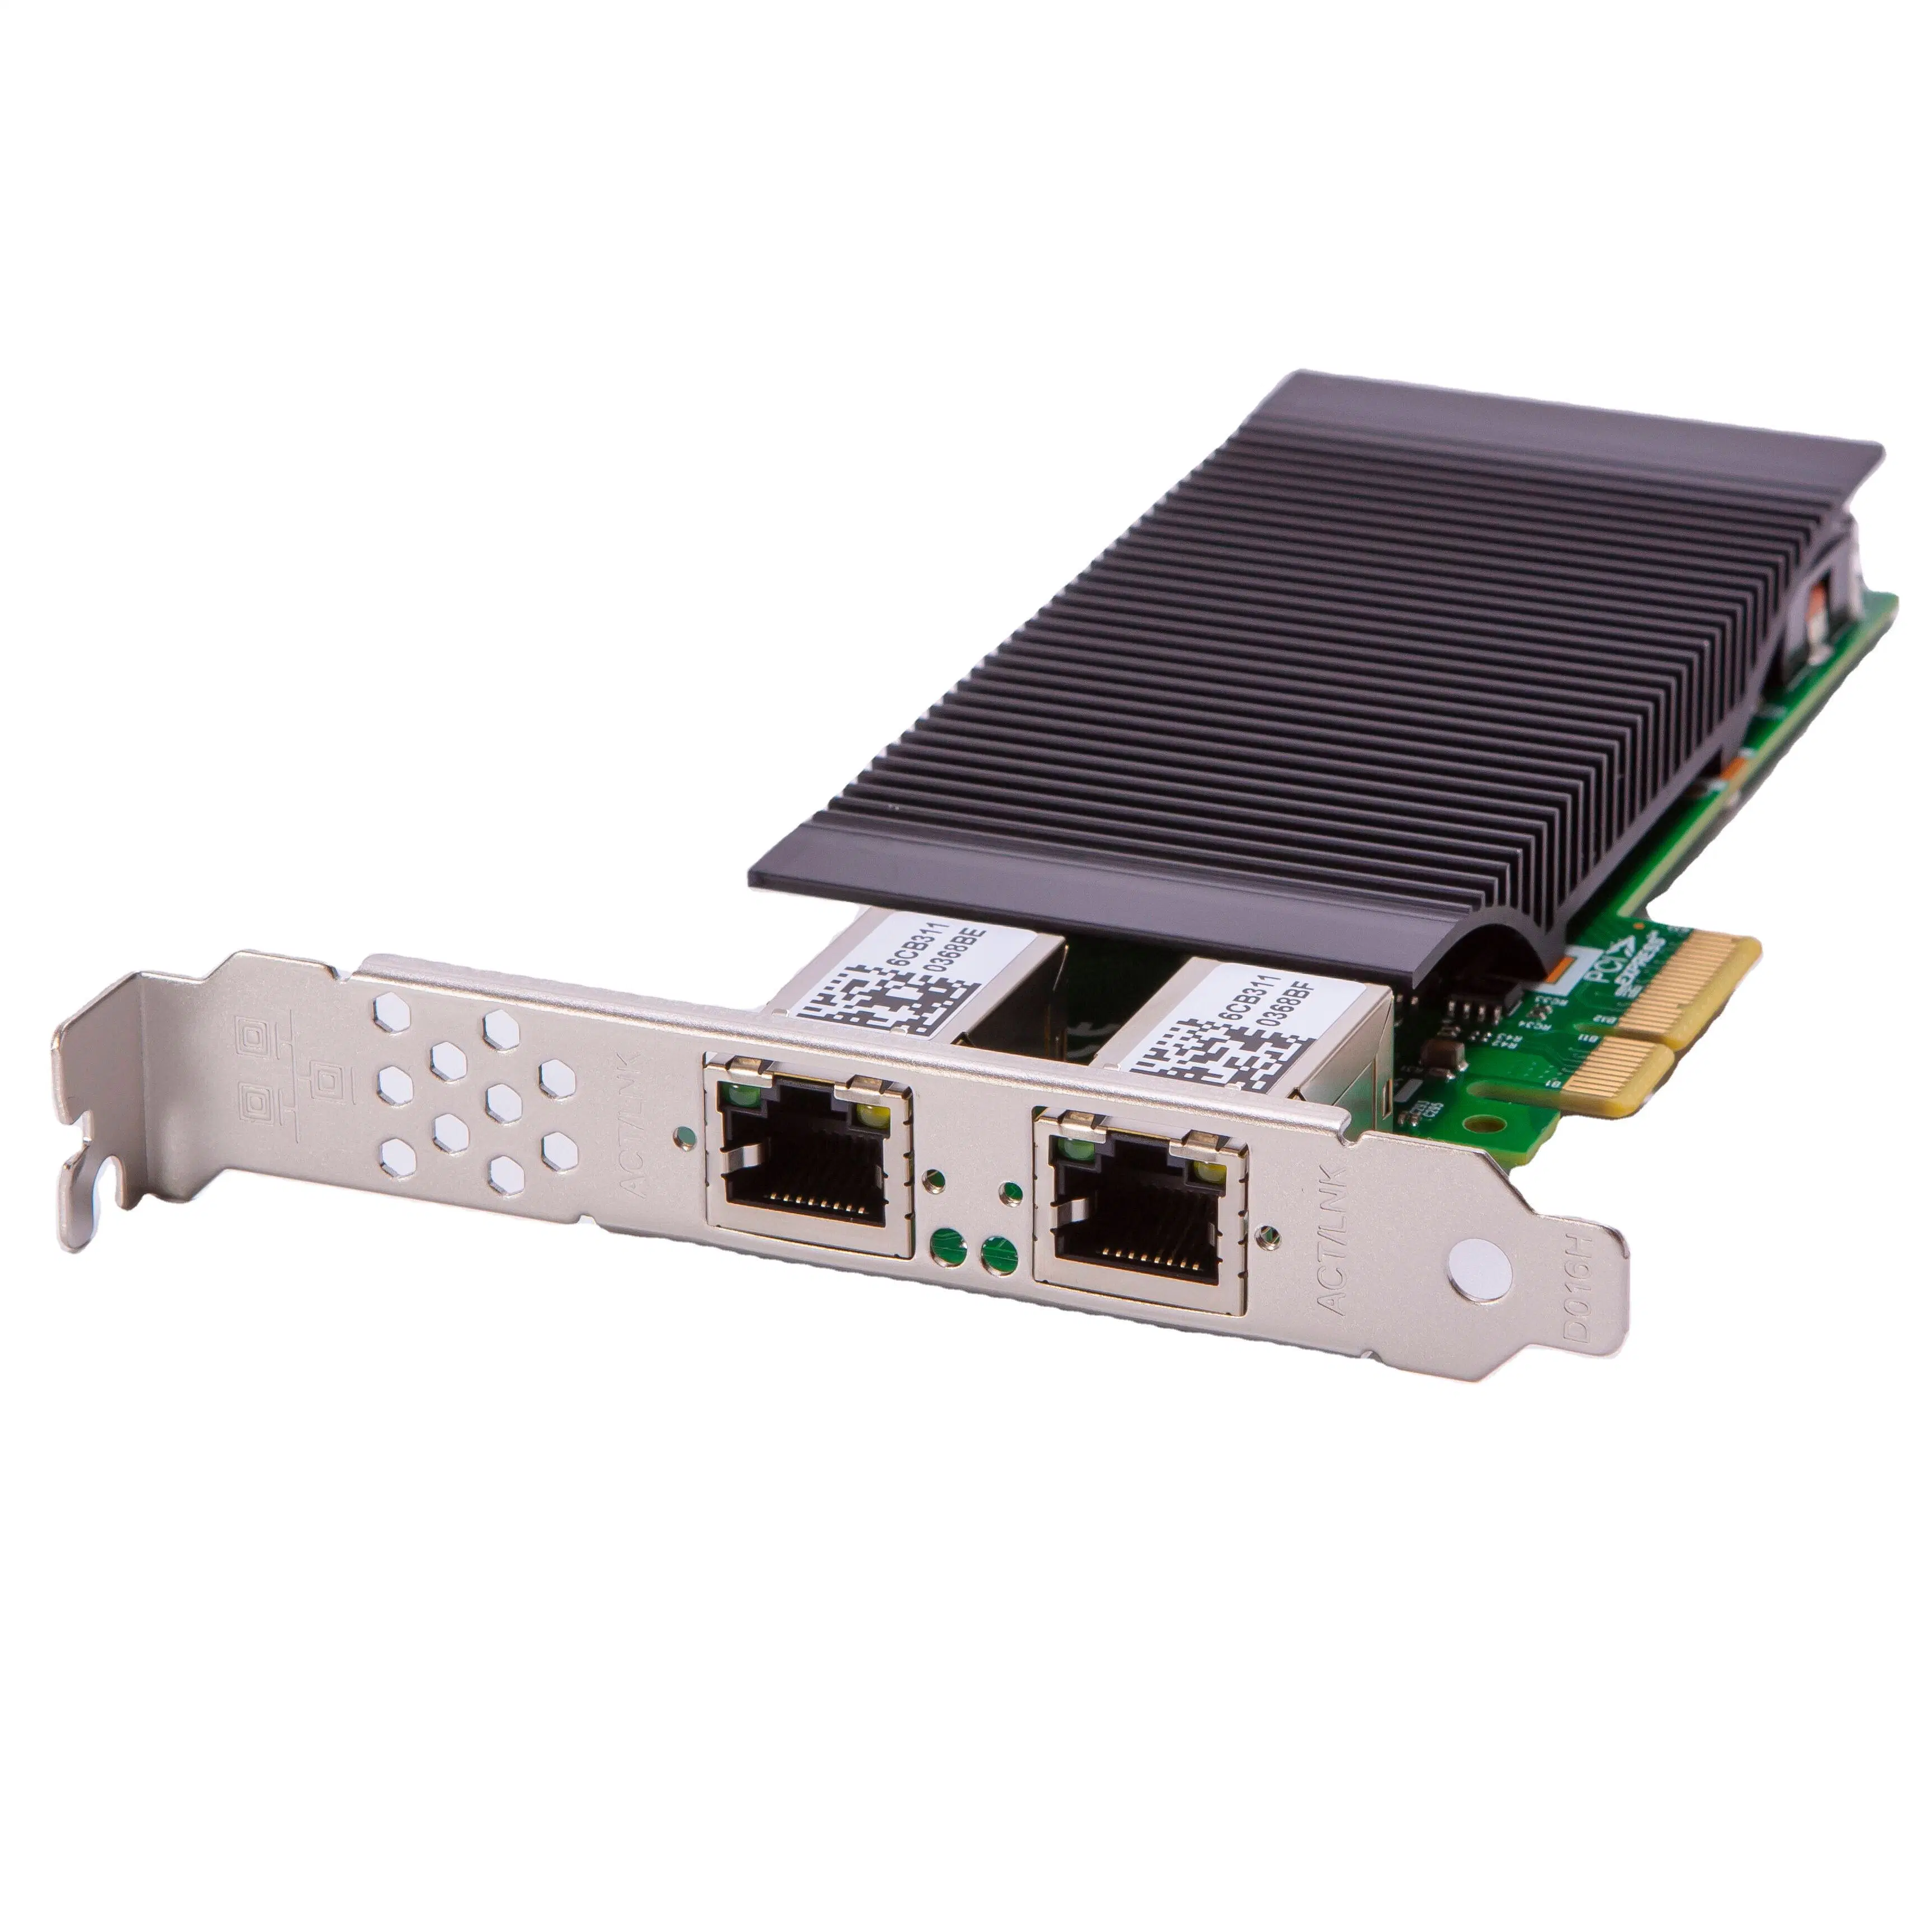 Network Card Pcie X4 2 Port 802.3at Poe+ Gigabit Vision Frame Grabber Card (Intel I350 Based)